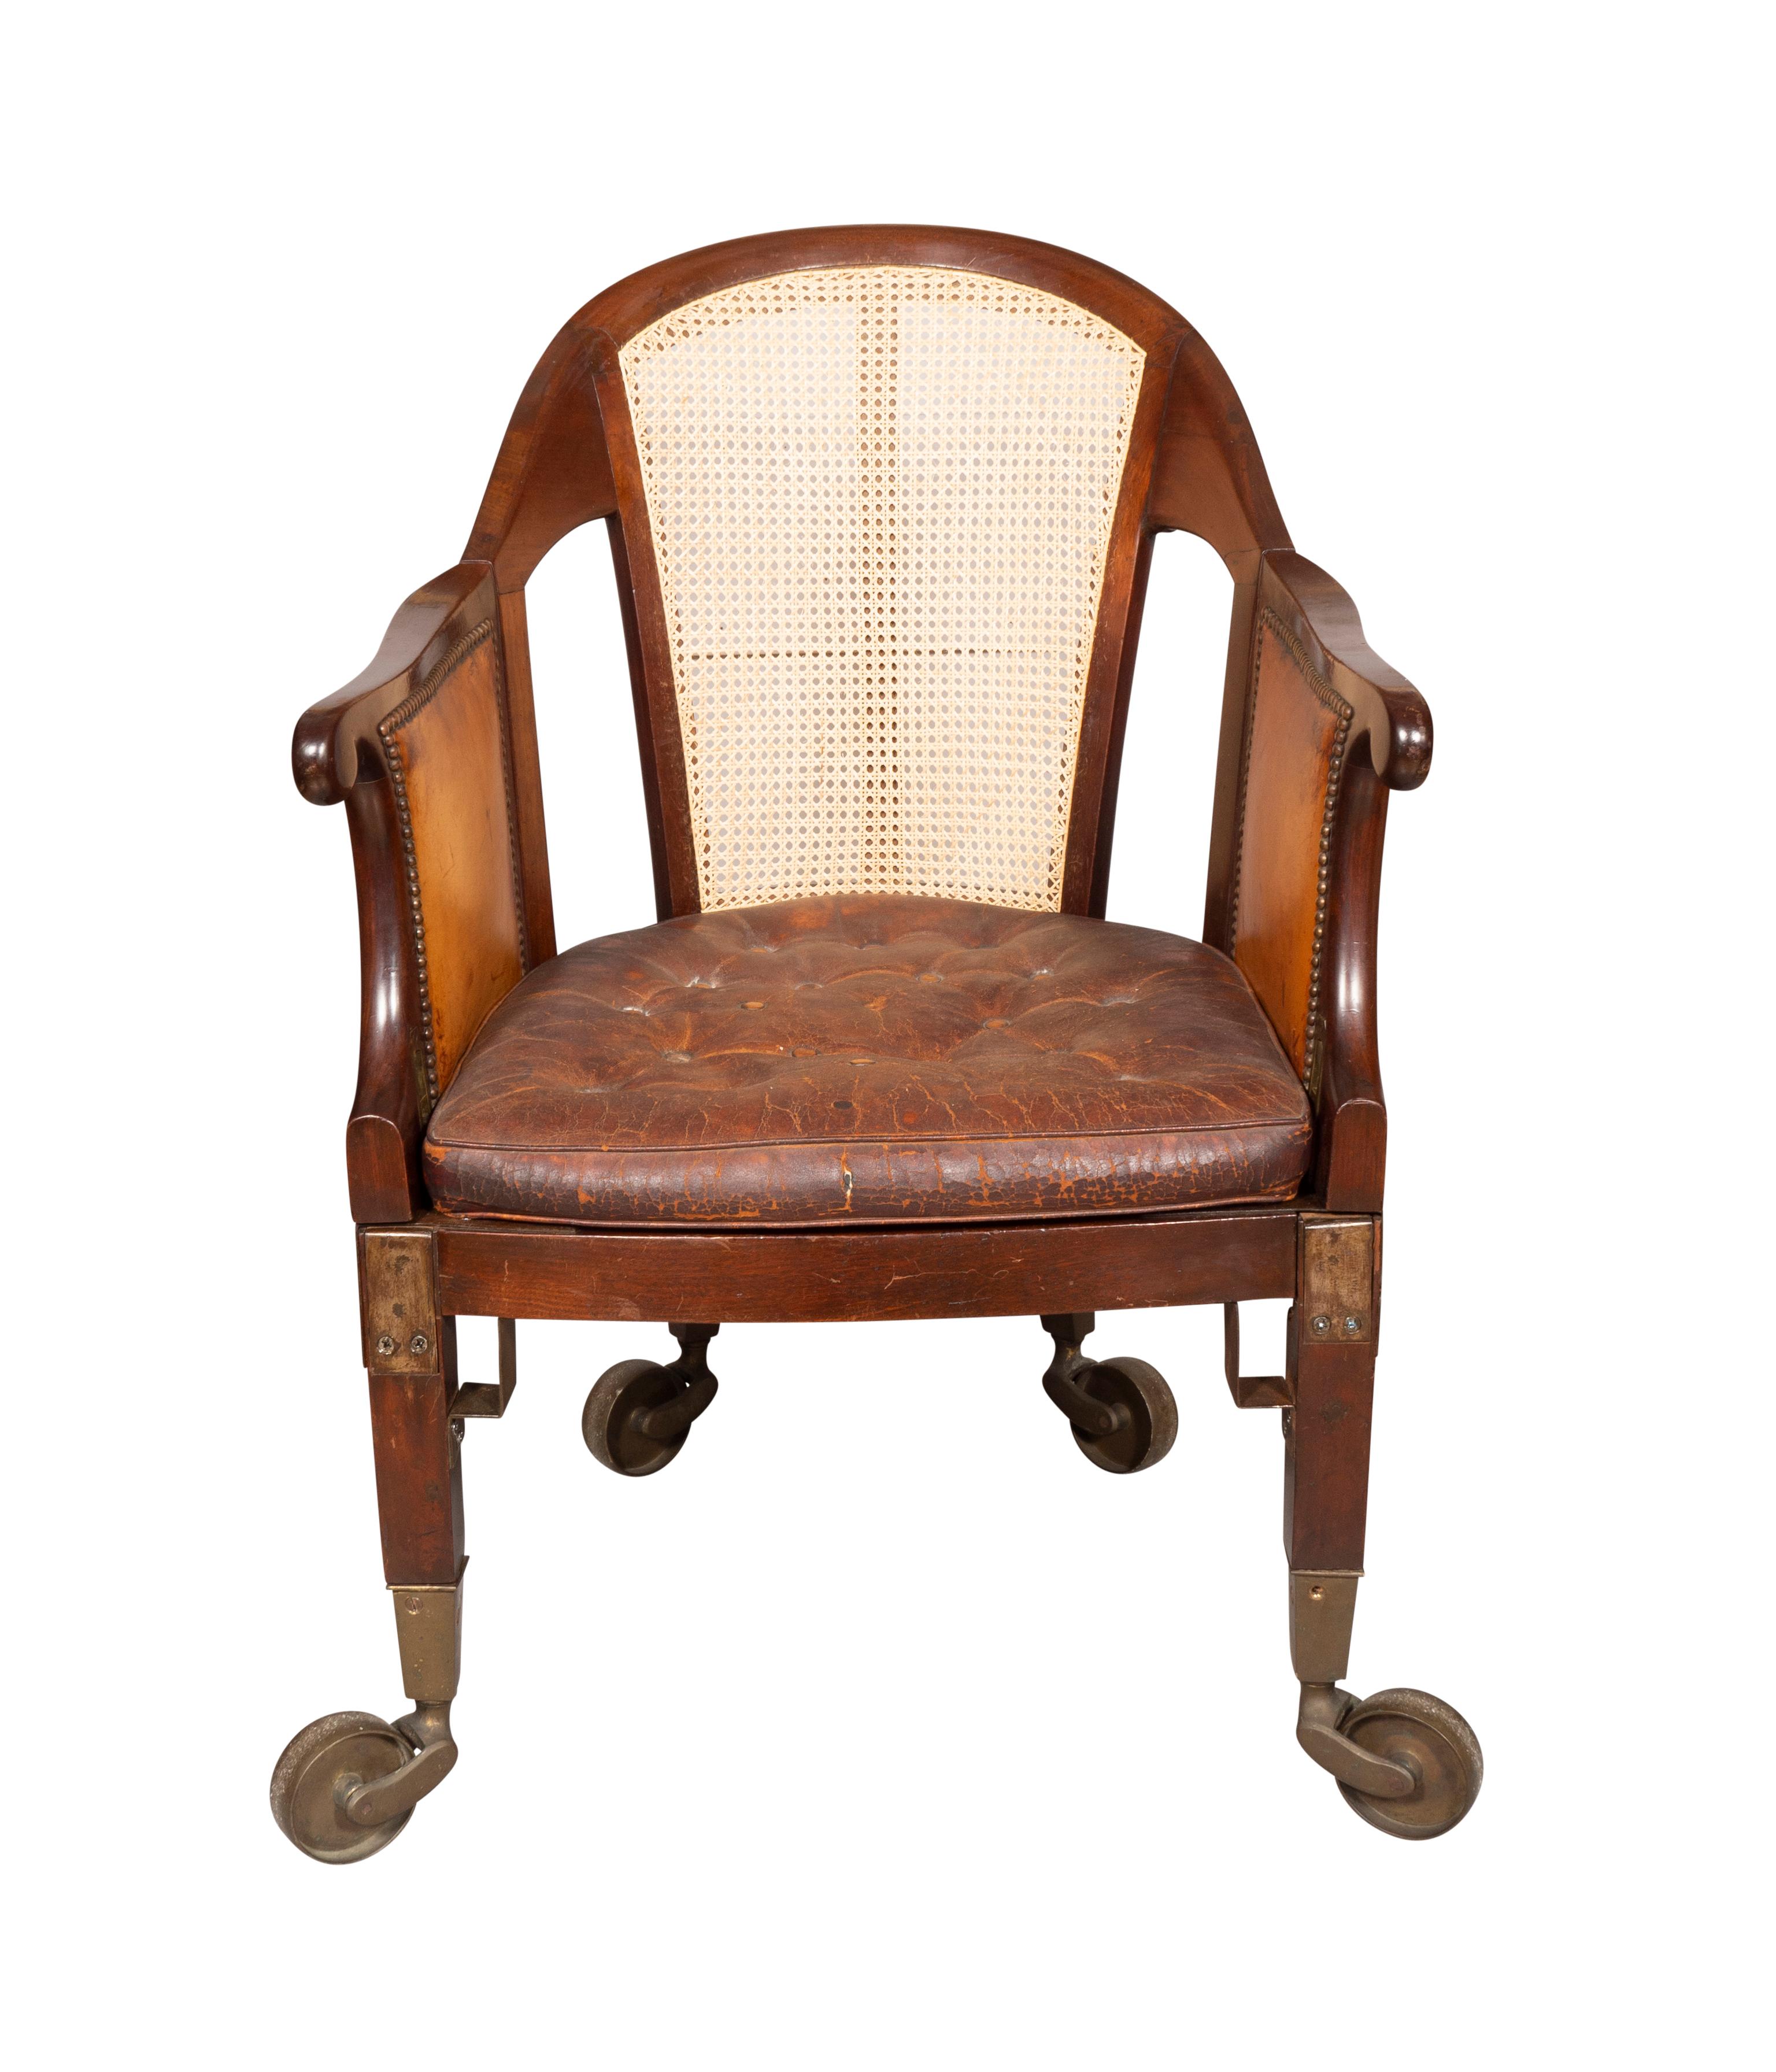 Ein ungewöhnlicher Stuhl mit gewölbter Rückenlehne, neu mit Rohrstöcken versehen. Die Seiten sind neu verkleidet und die Seiten lassen sich für einen leichten Zugang aufklappen. Er steht auf quadratischen Beinen und sehr großen Messingrollen, Sitz